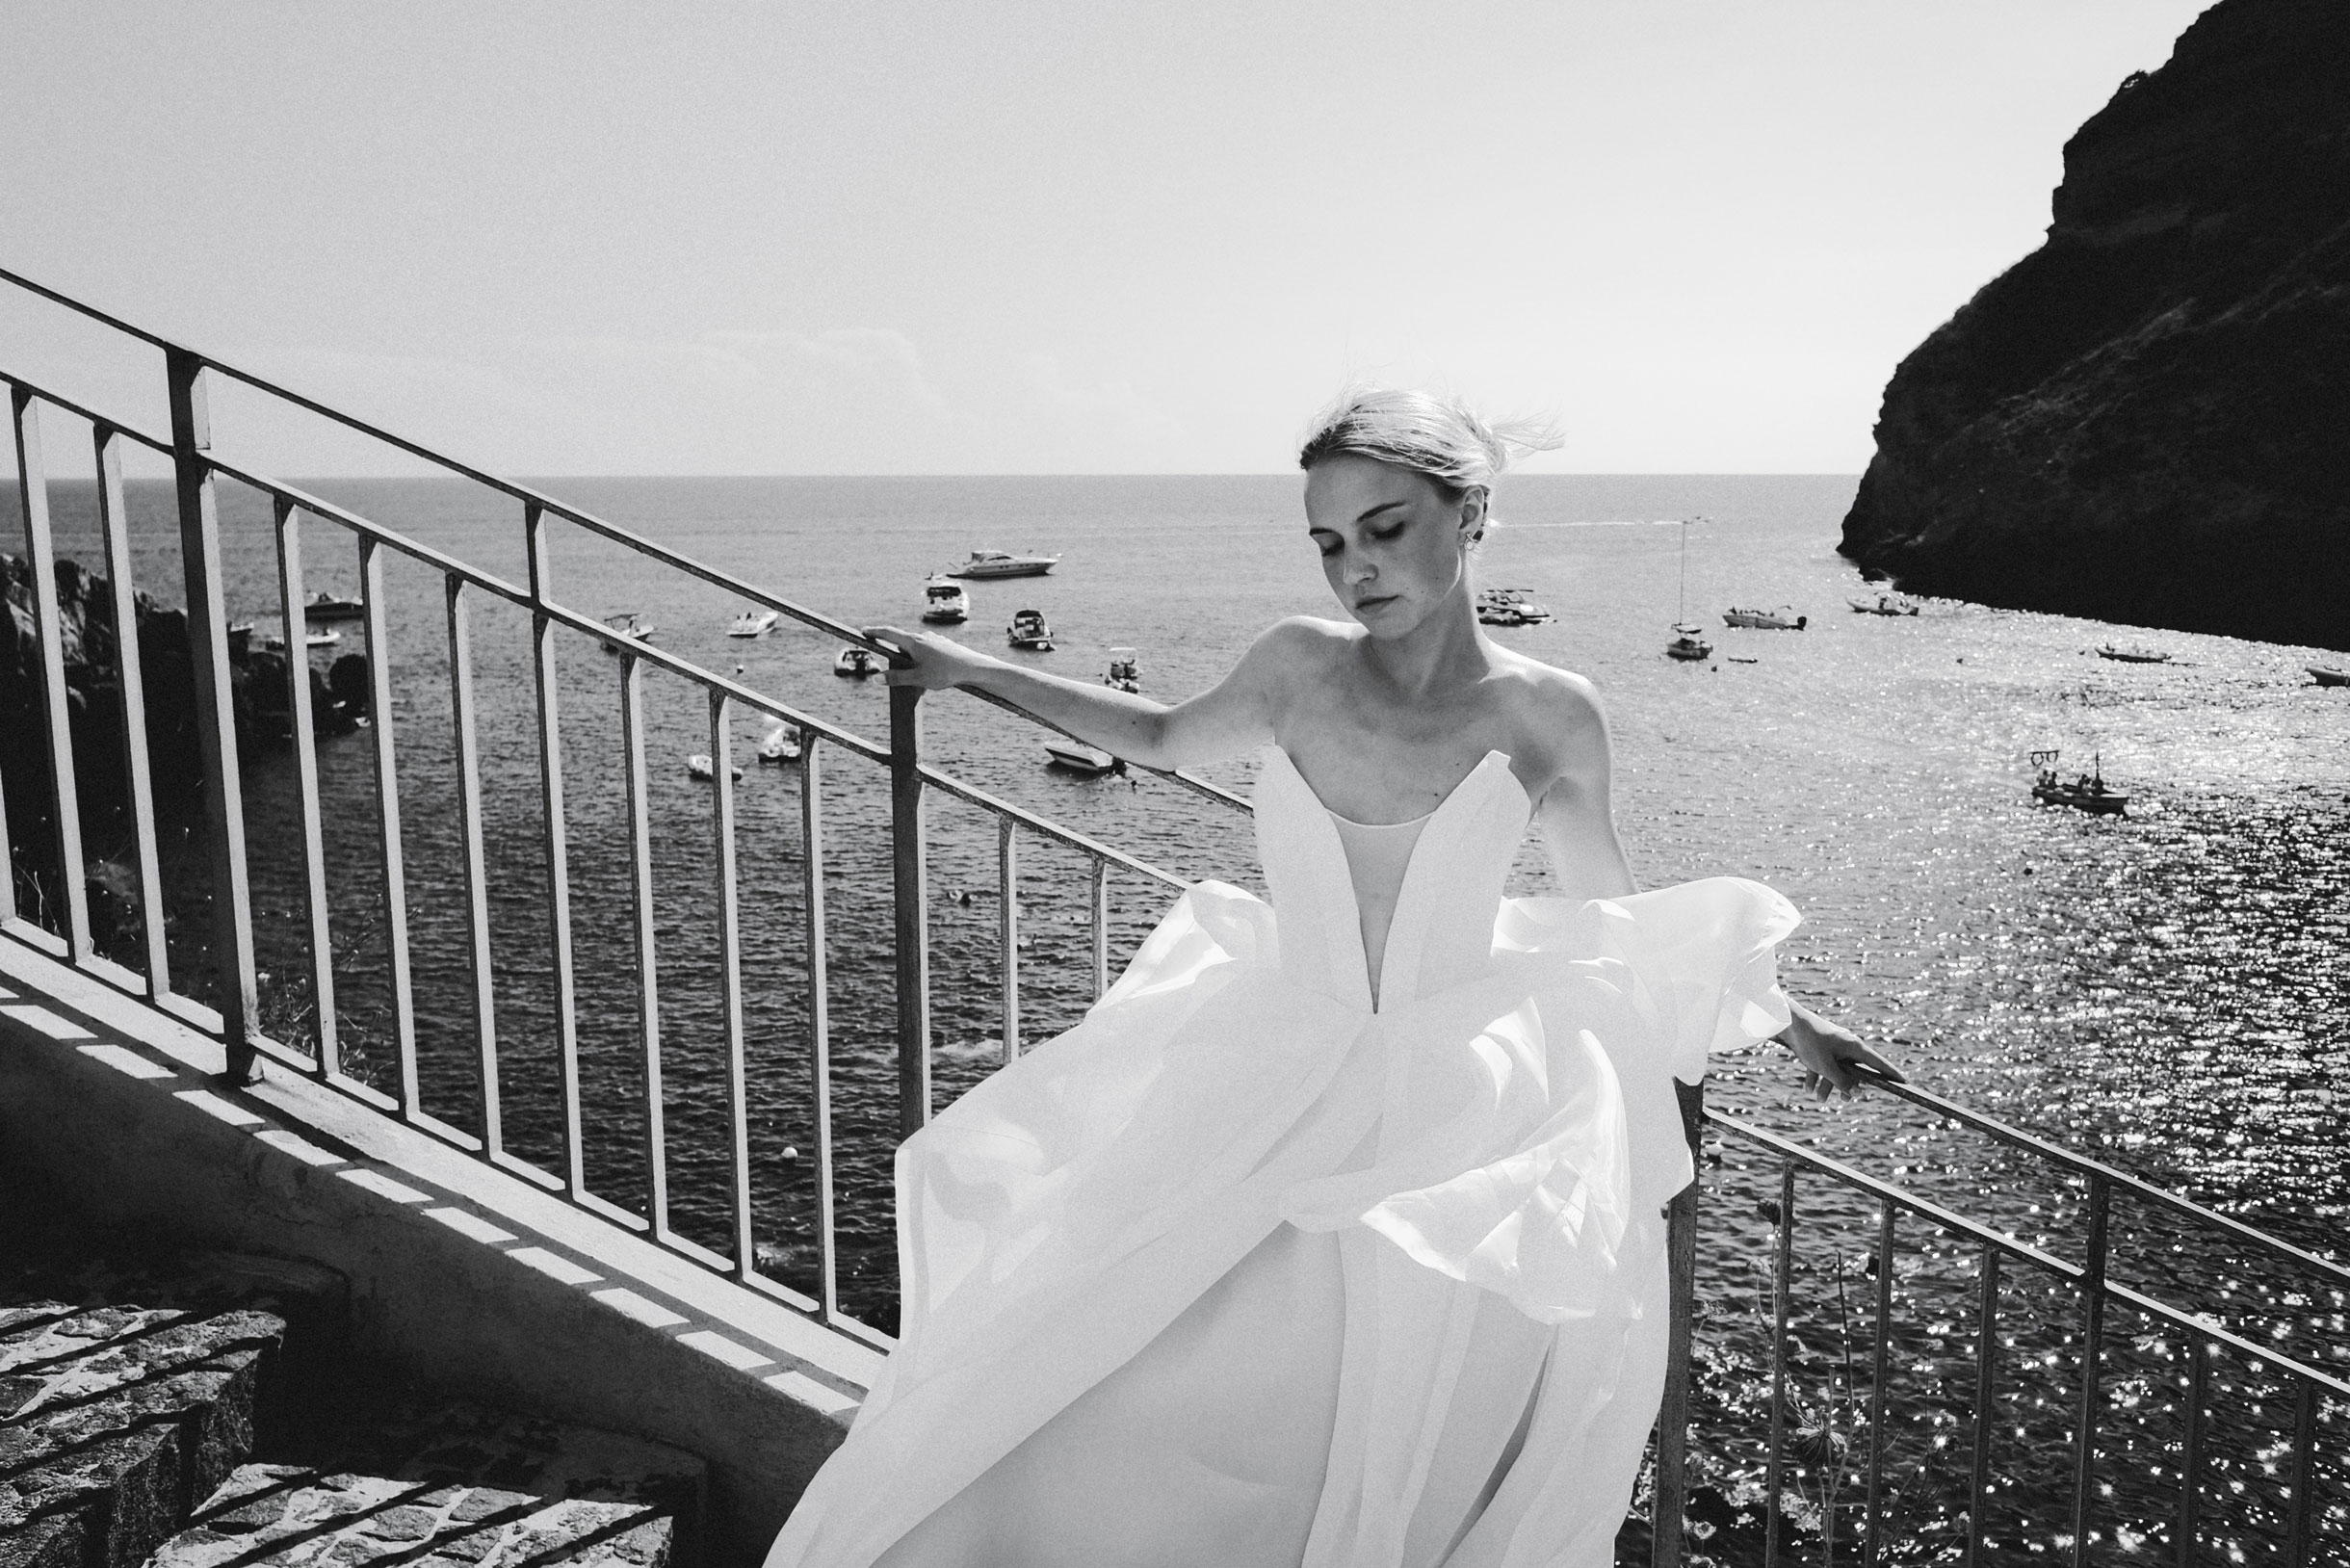 Из забавного: жена хотела фотосессию в свадебном платье на берегу. Черт нас дернул решить сделать снимки на другом краю острова